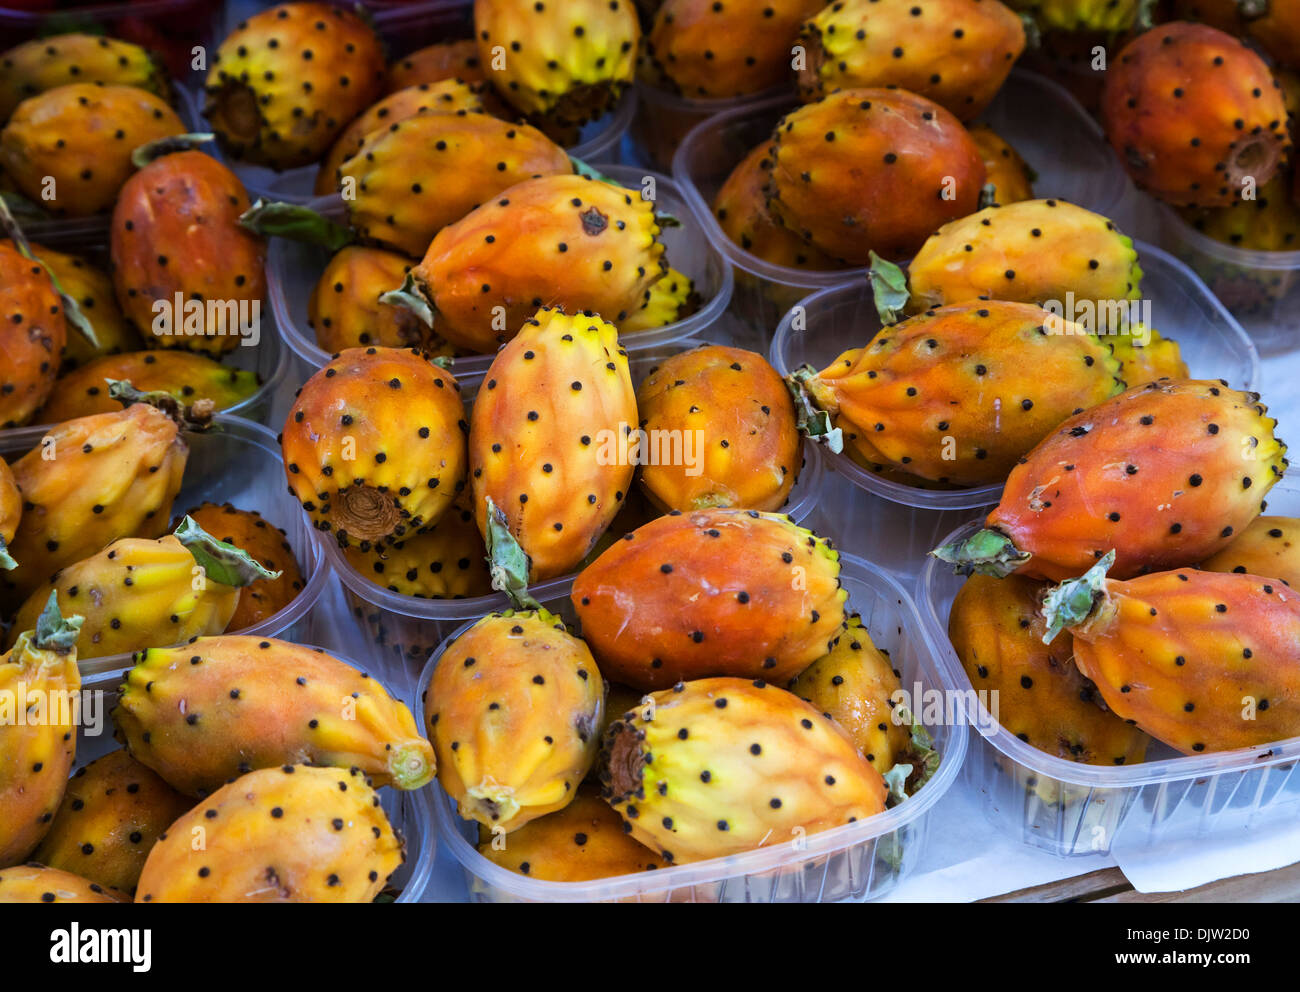 Opuntia prickly pears on sale in the Mercato di Rialto market, Venice, Italy. Stock Photo